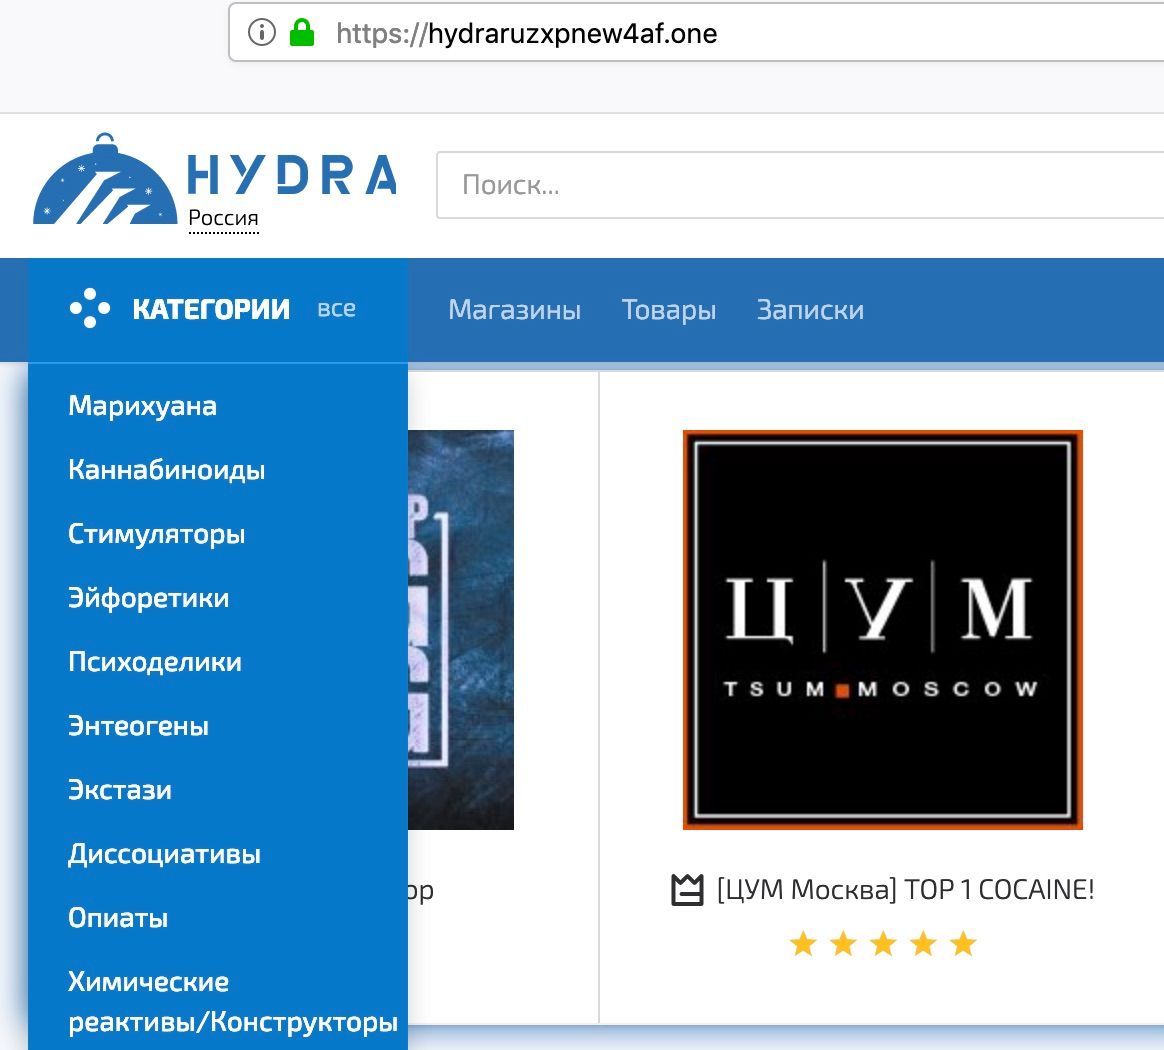 Сайт hydra википедия конопля в архангельске